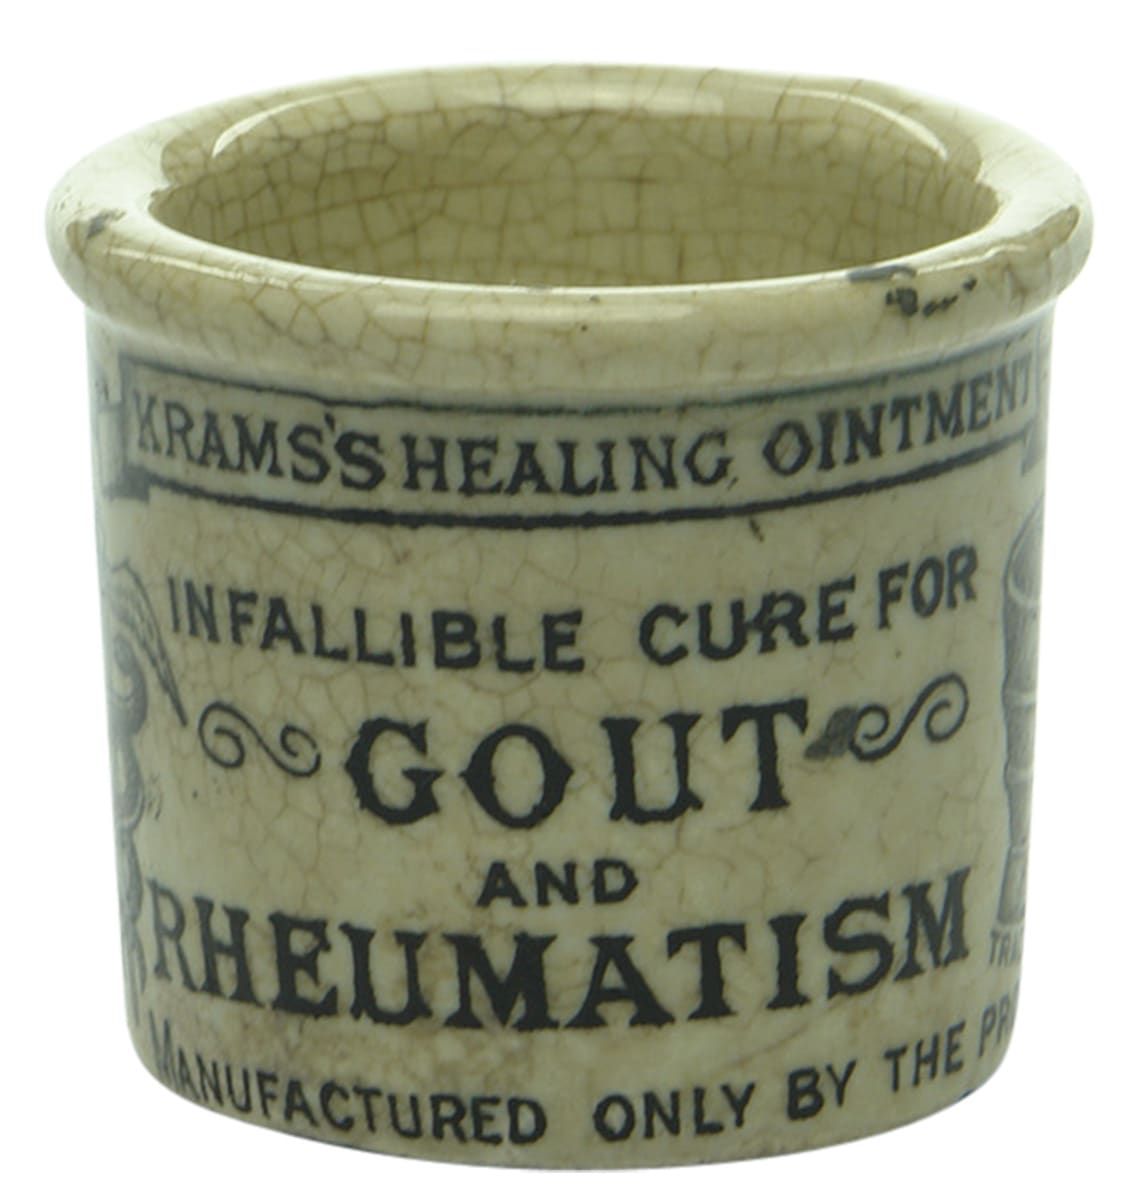 Krams Gout Rheumatism Healing Ointment Pot